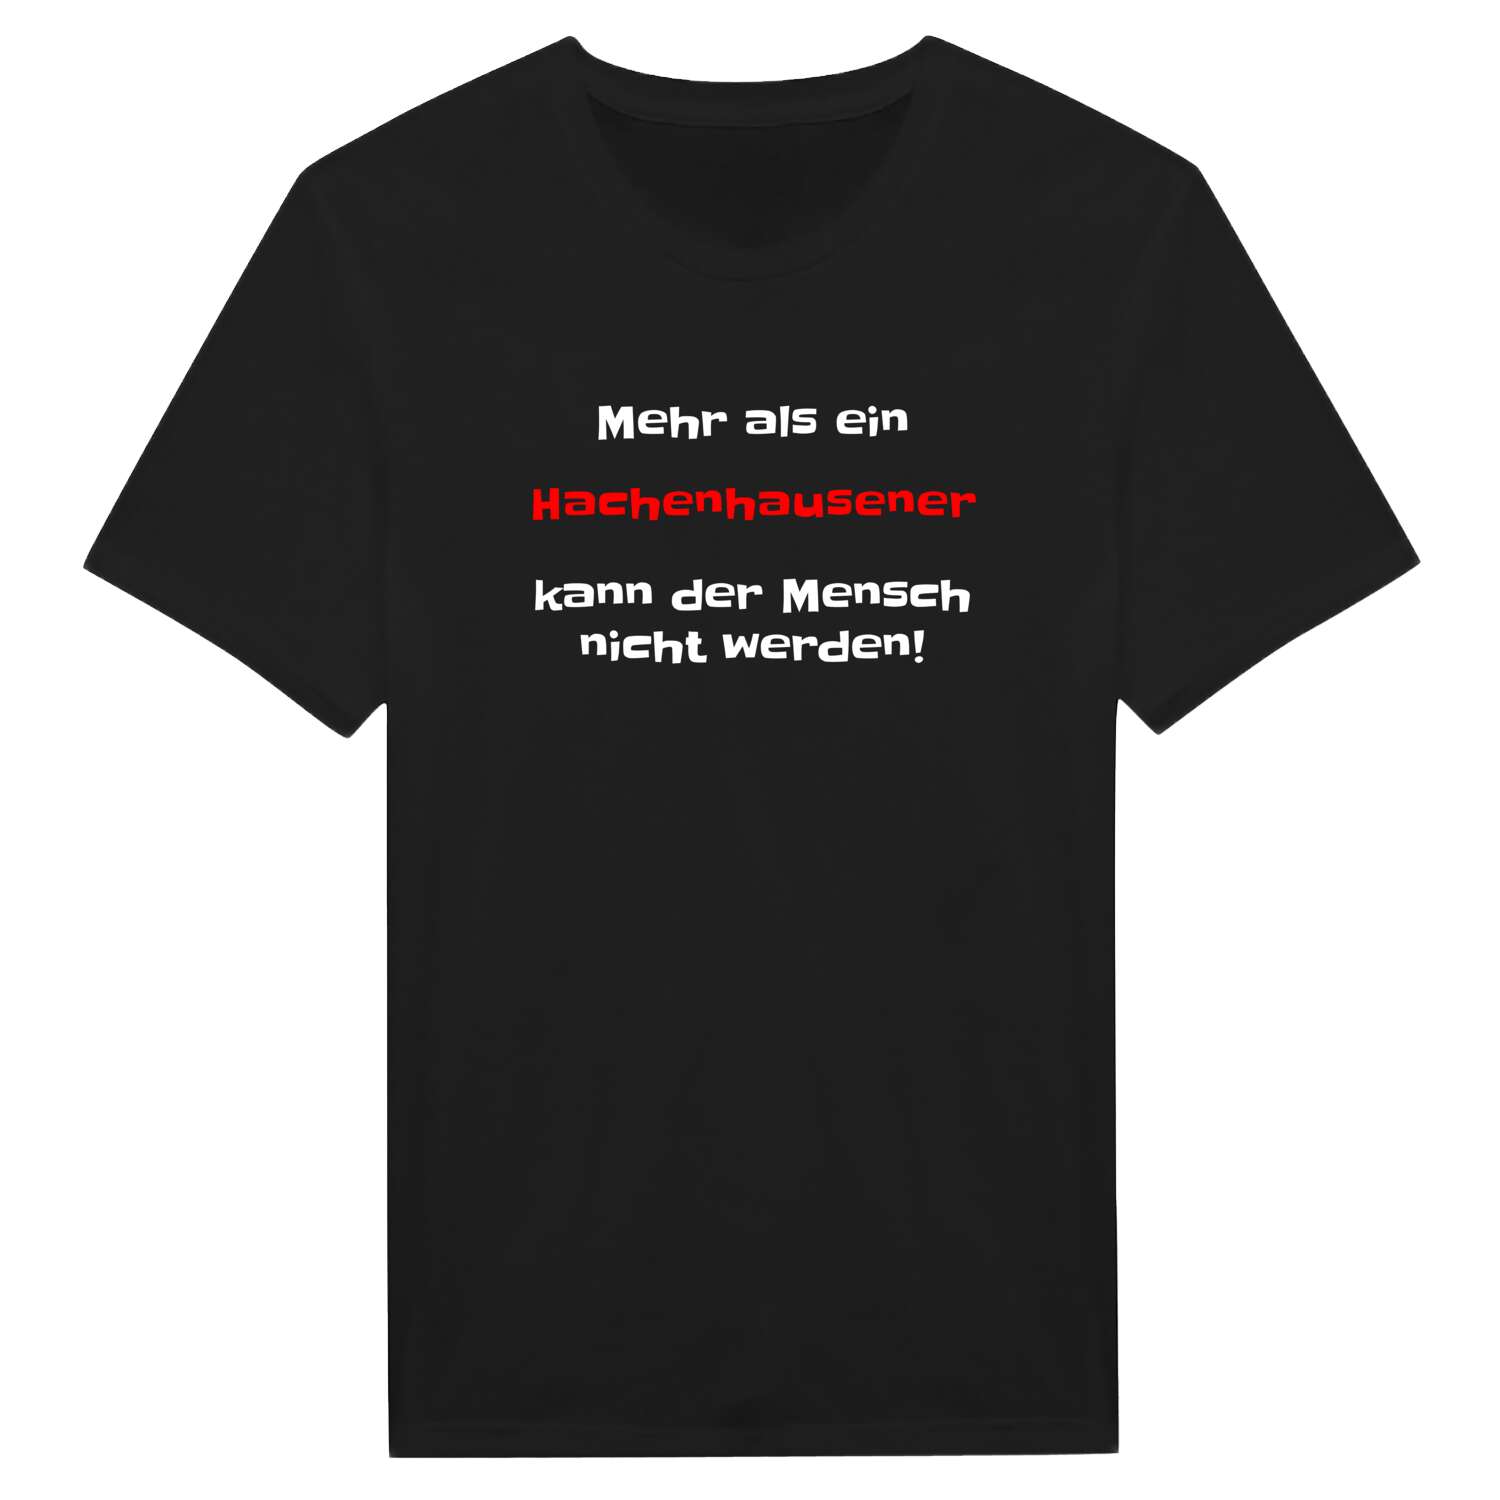 Hachenhausen T-Shirt »Mehr als ein«